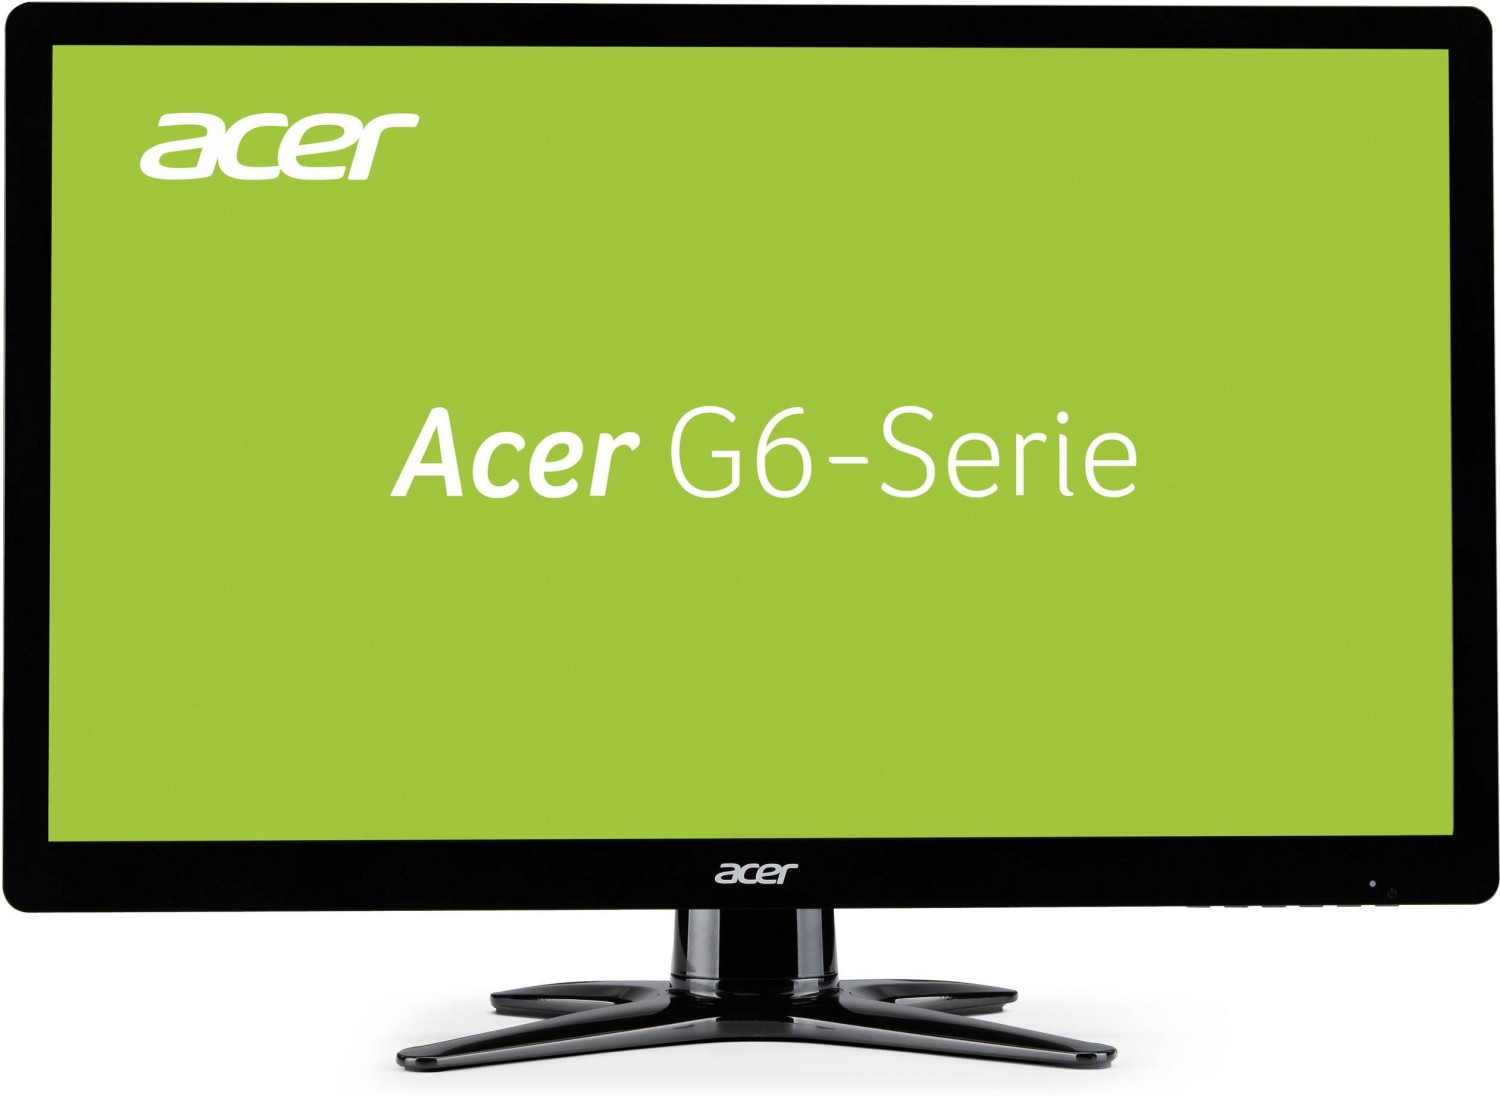 Acer G276HL